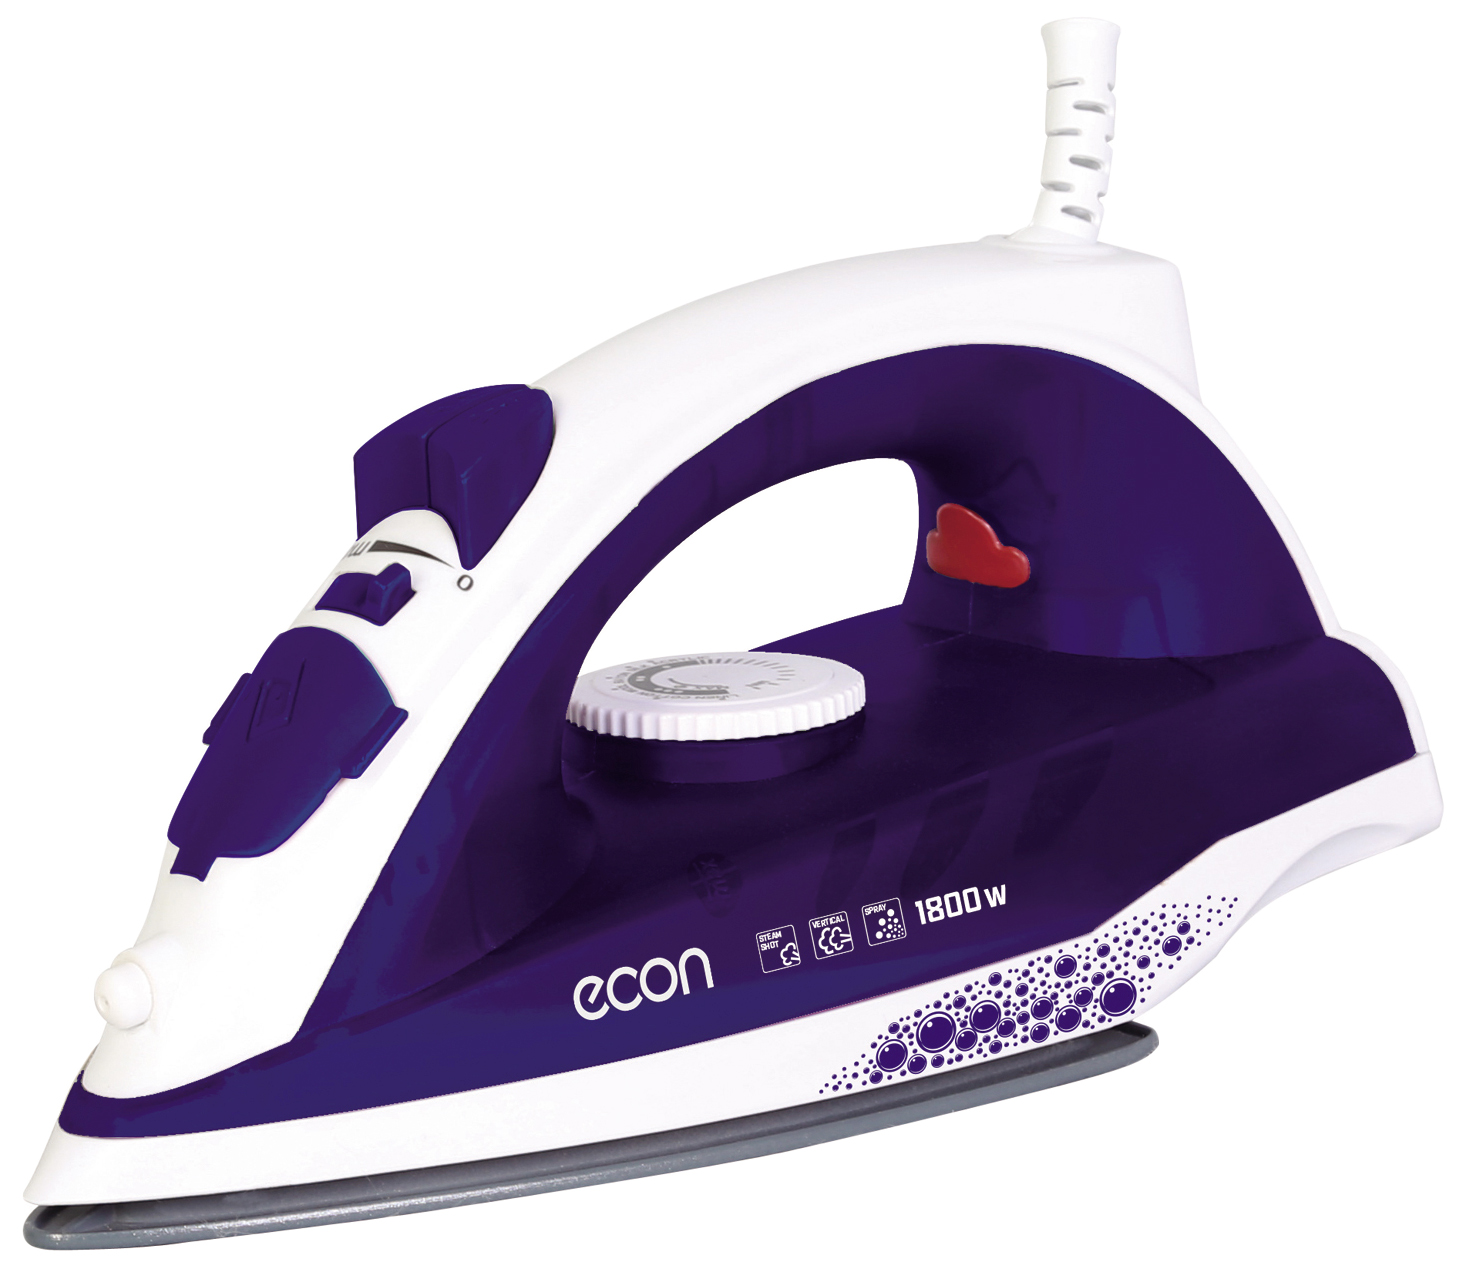 Утюг ECON ECO-BI1801 White/Purple утюг hyundai h si01564 purple white